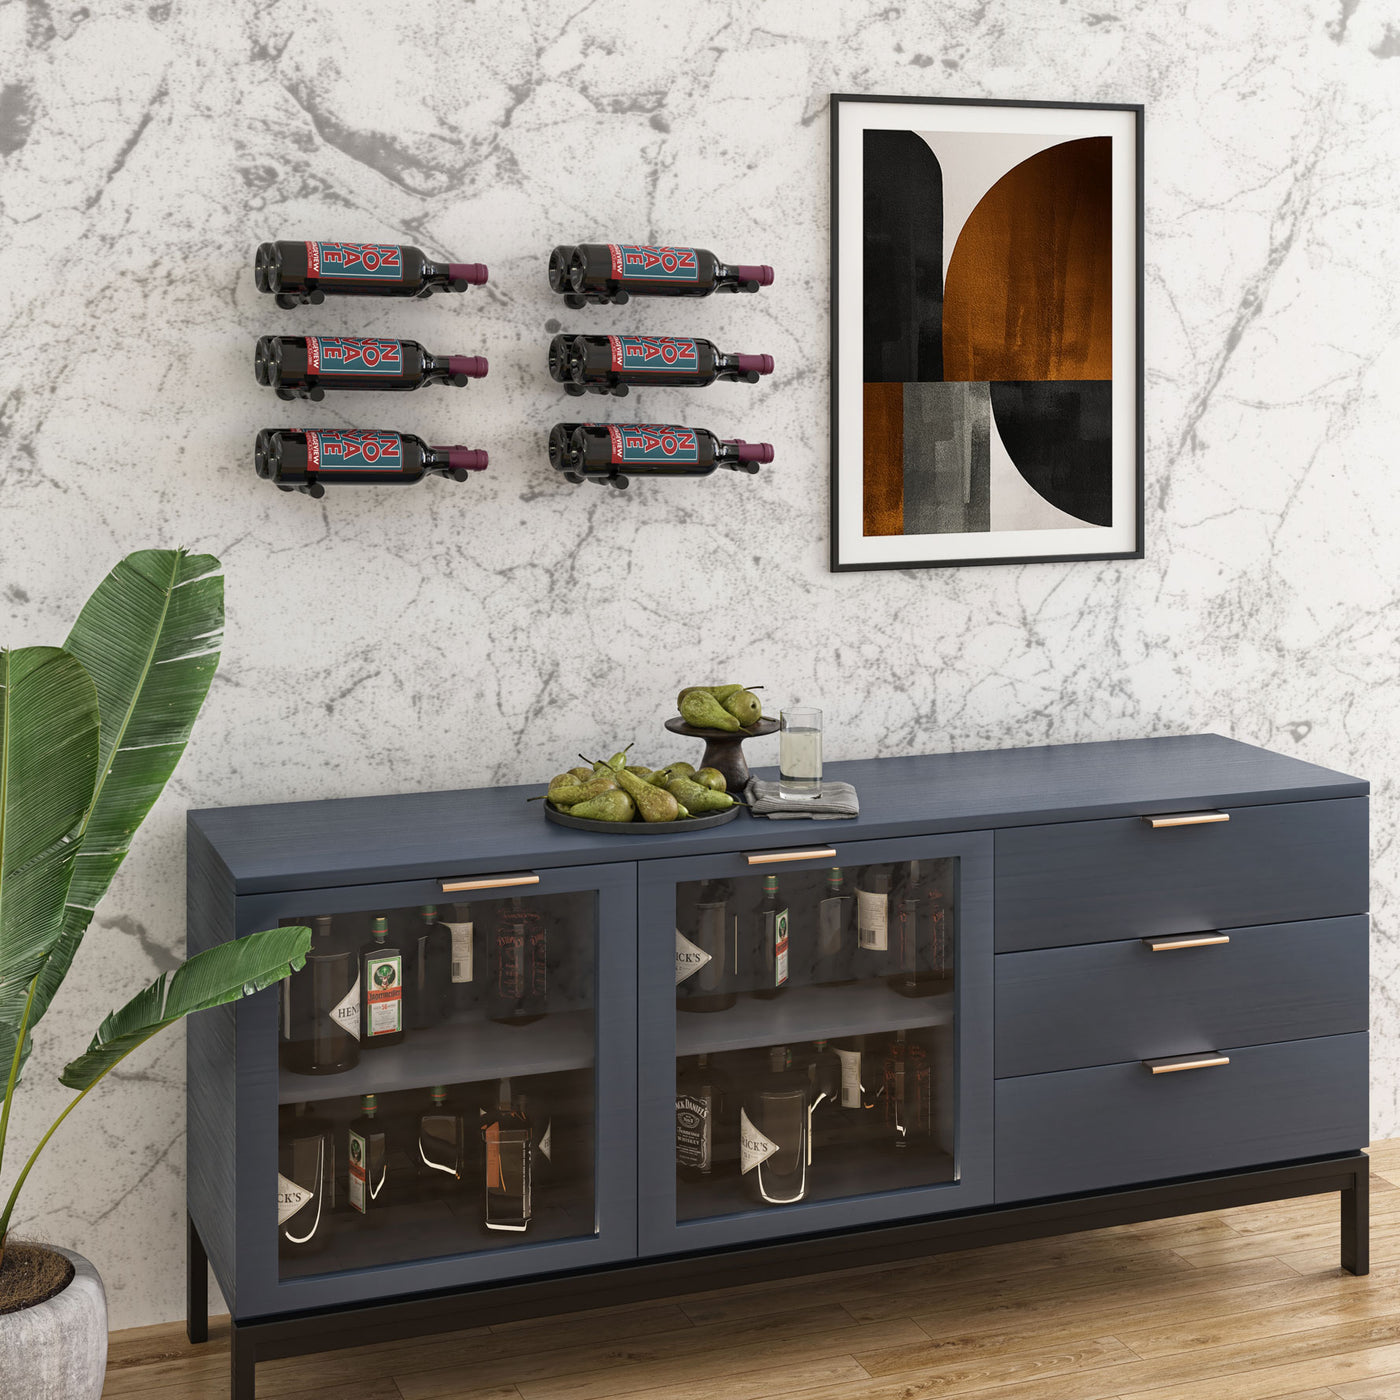 Vintageview Vino Pins 2 (wall mounted metal wine rack peg)